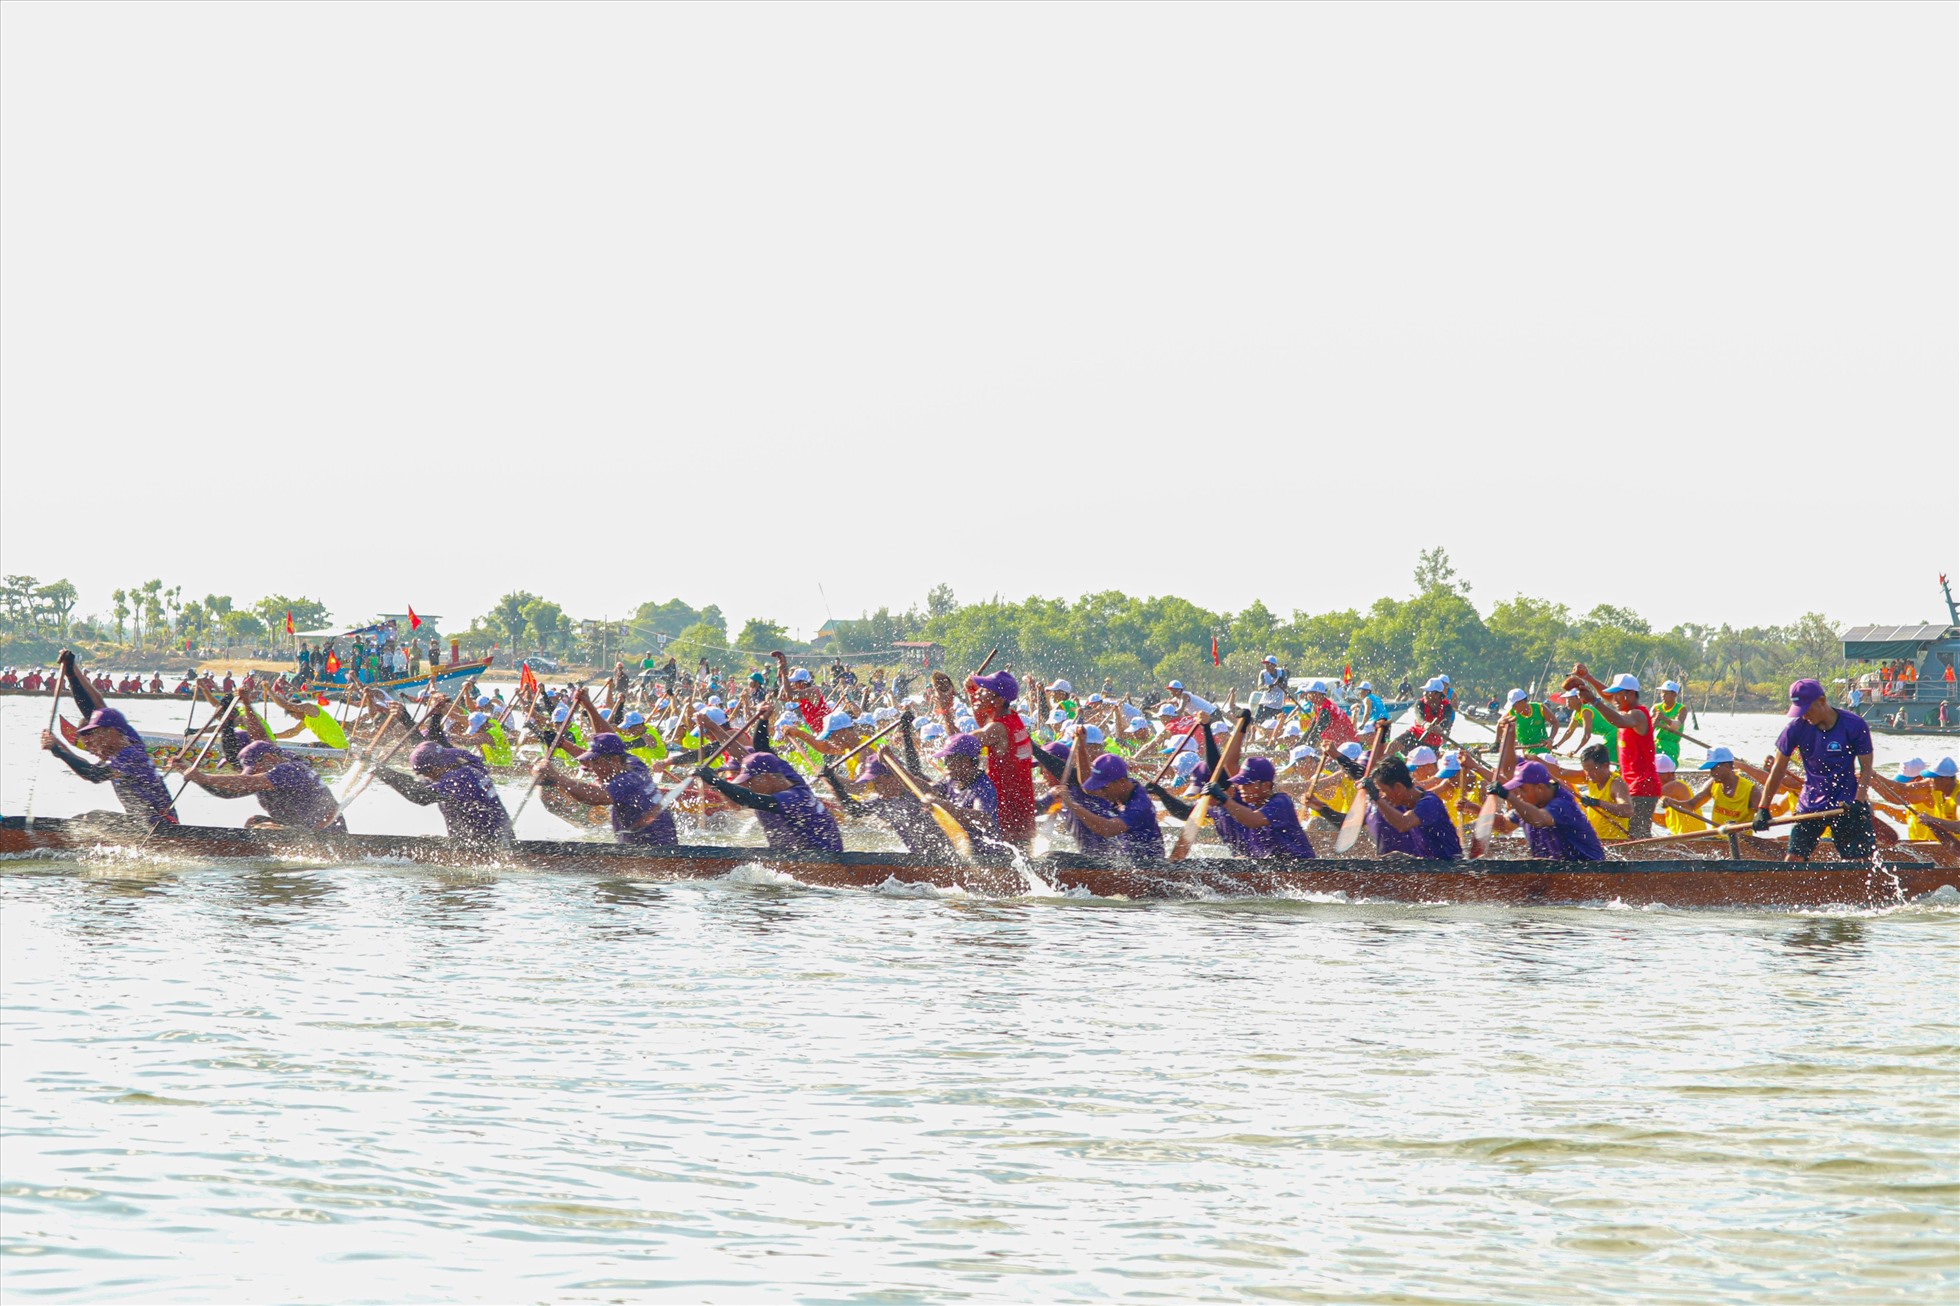 Sông Nhật Lệ đoạn qua địa phận huyện Quảng Ninh như “dậy sóng” bởi các thuyền đua. Ảnh: CTV